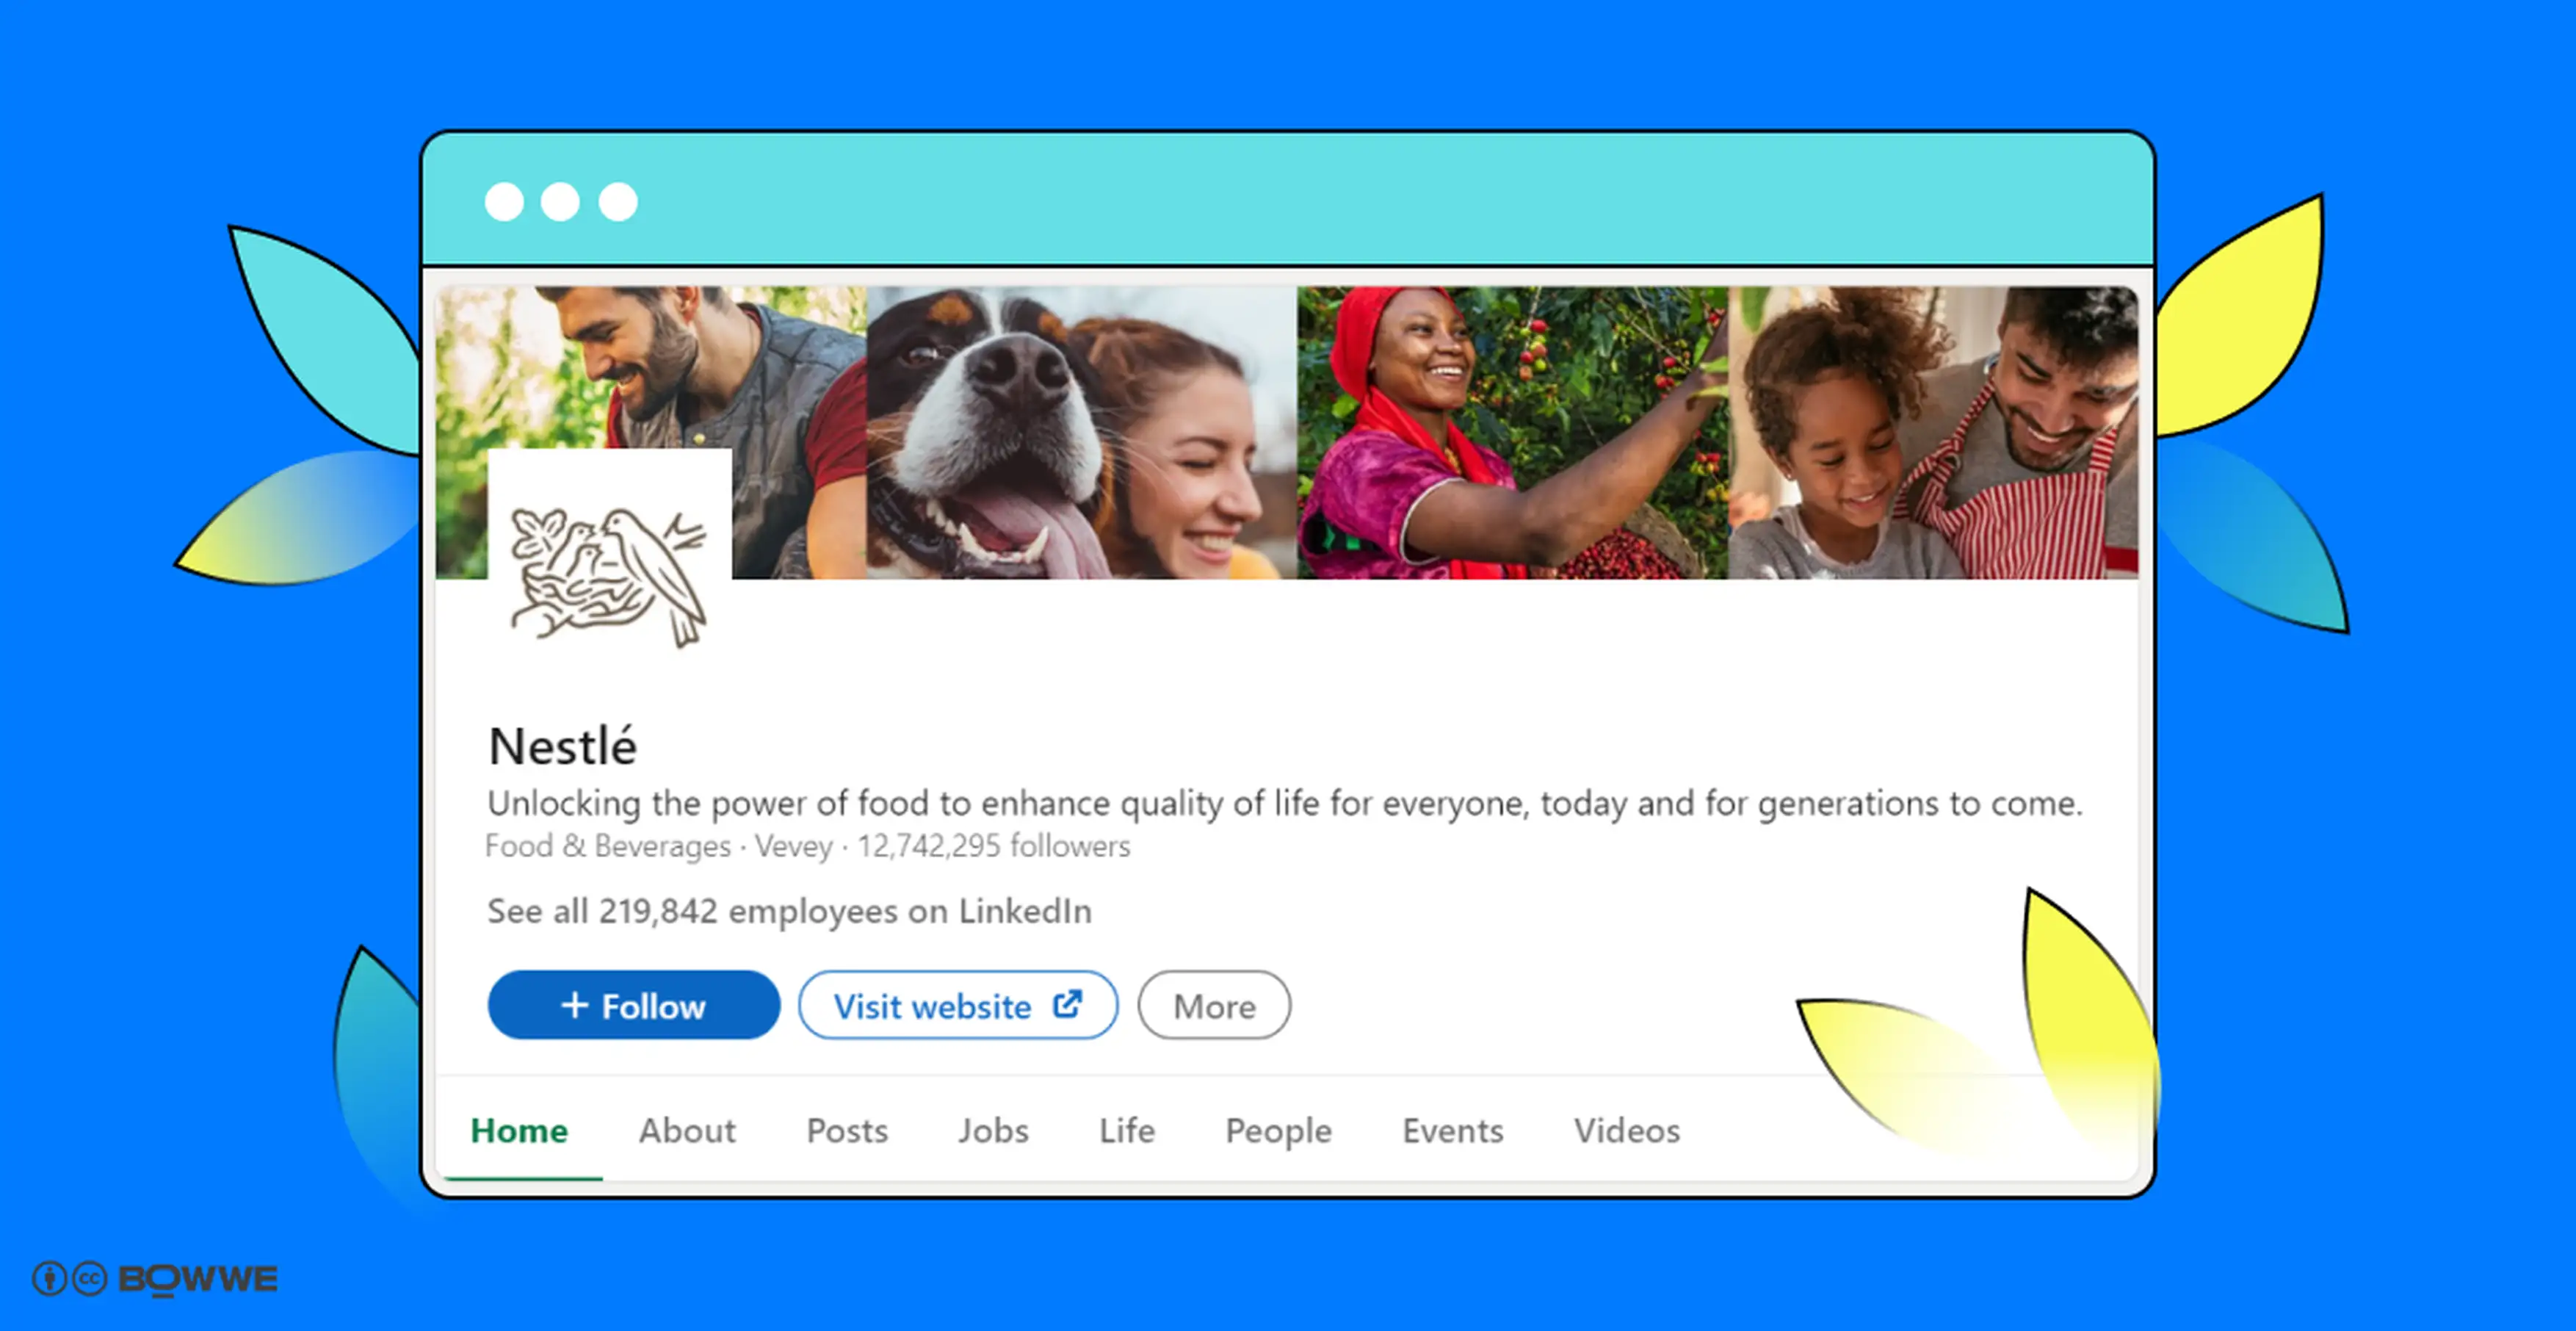 Nestlé-Profil auf LinkedIn